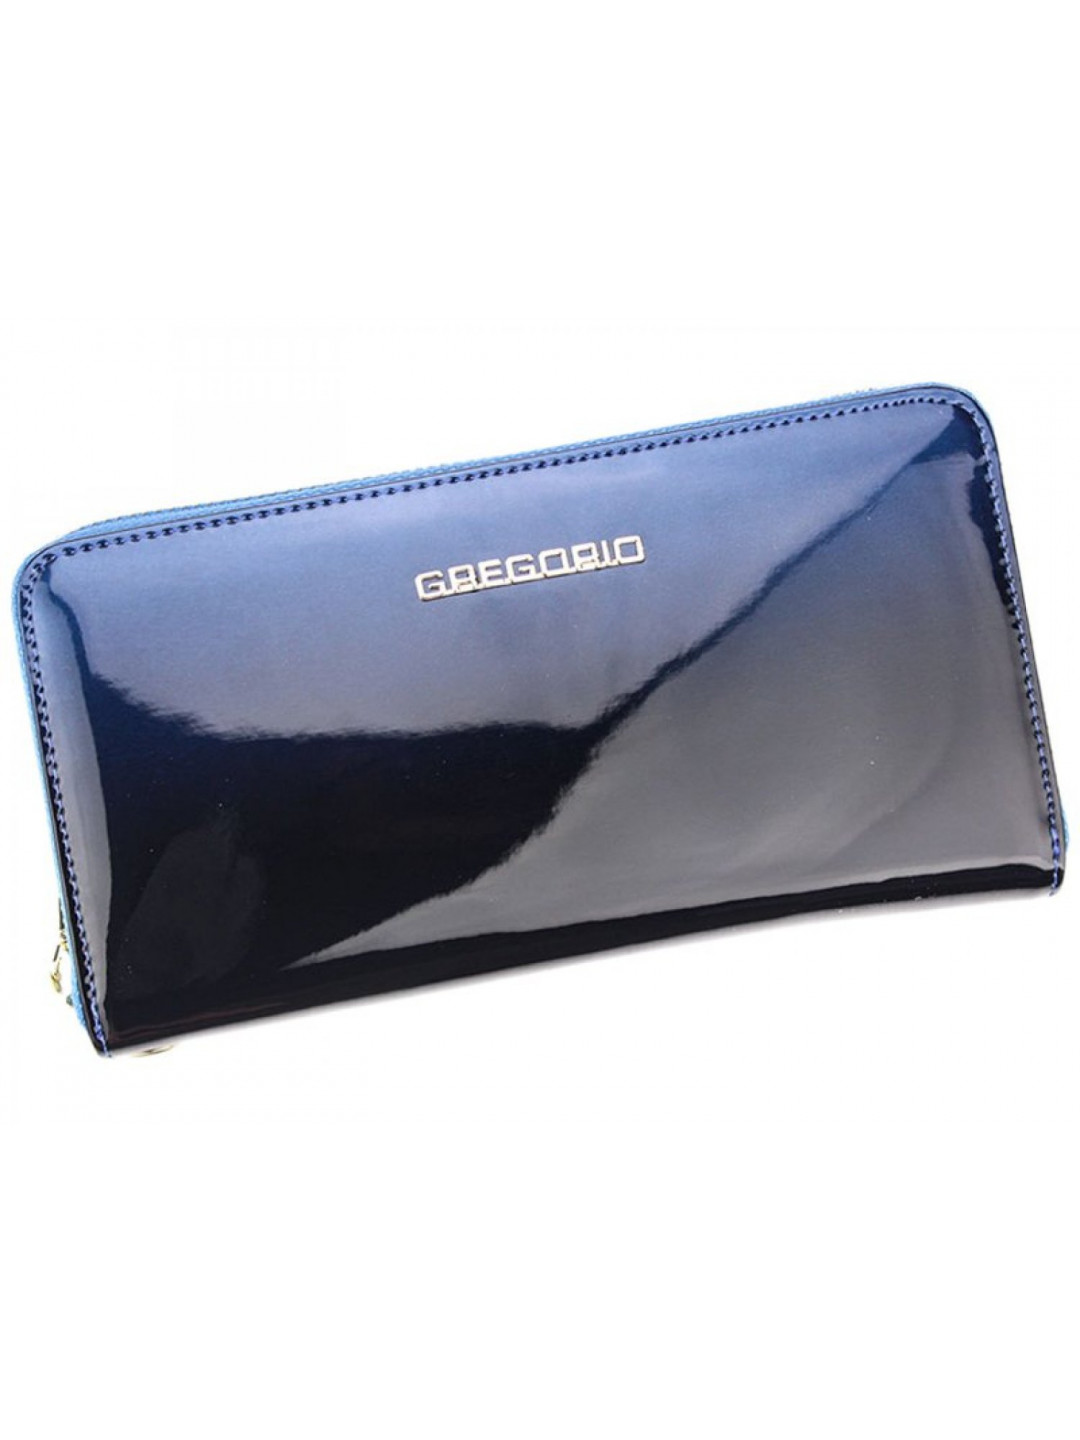 Dámská kožená pouzdrová peněženka modrá – Gregorio Luziana